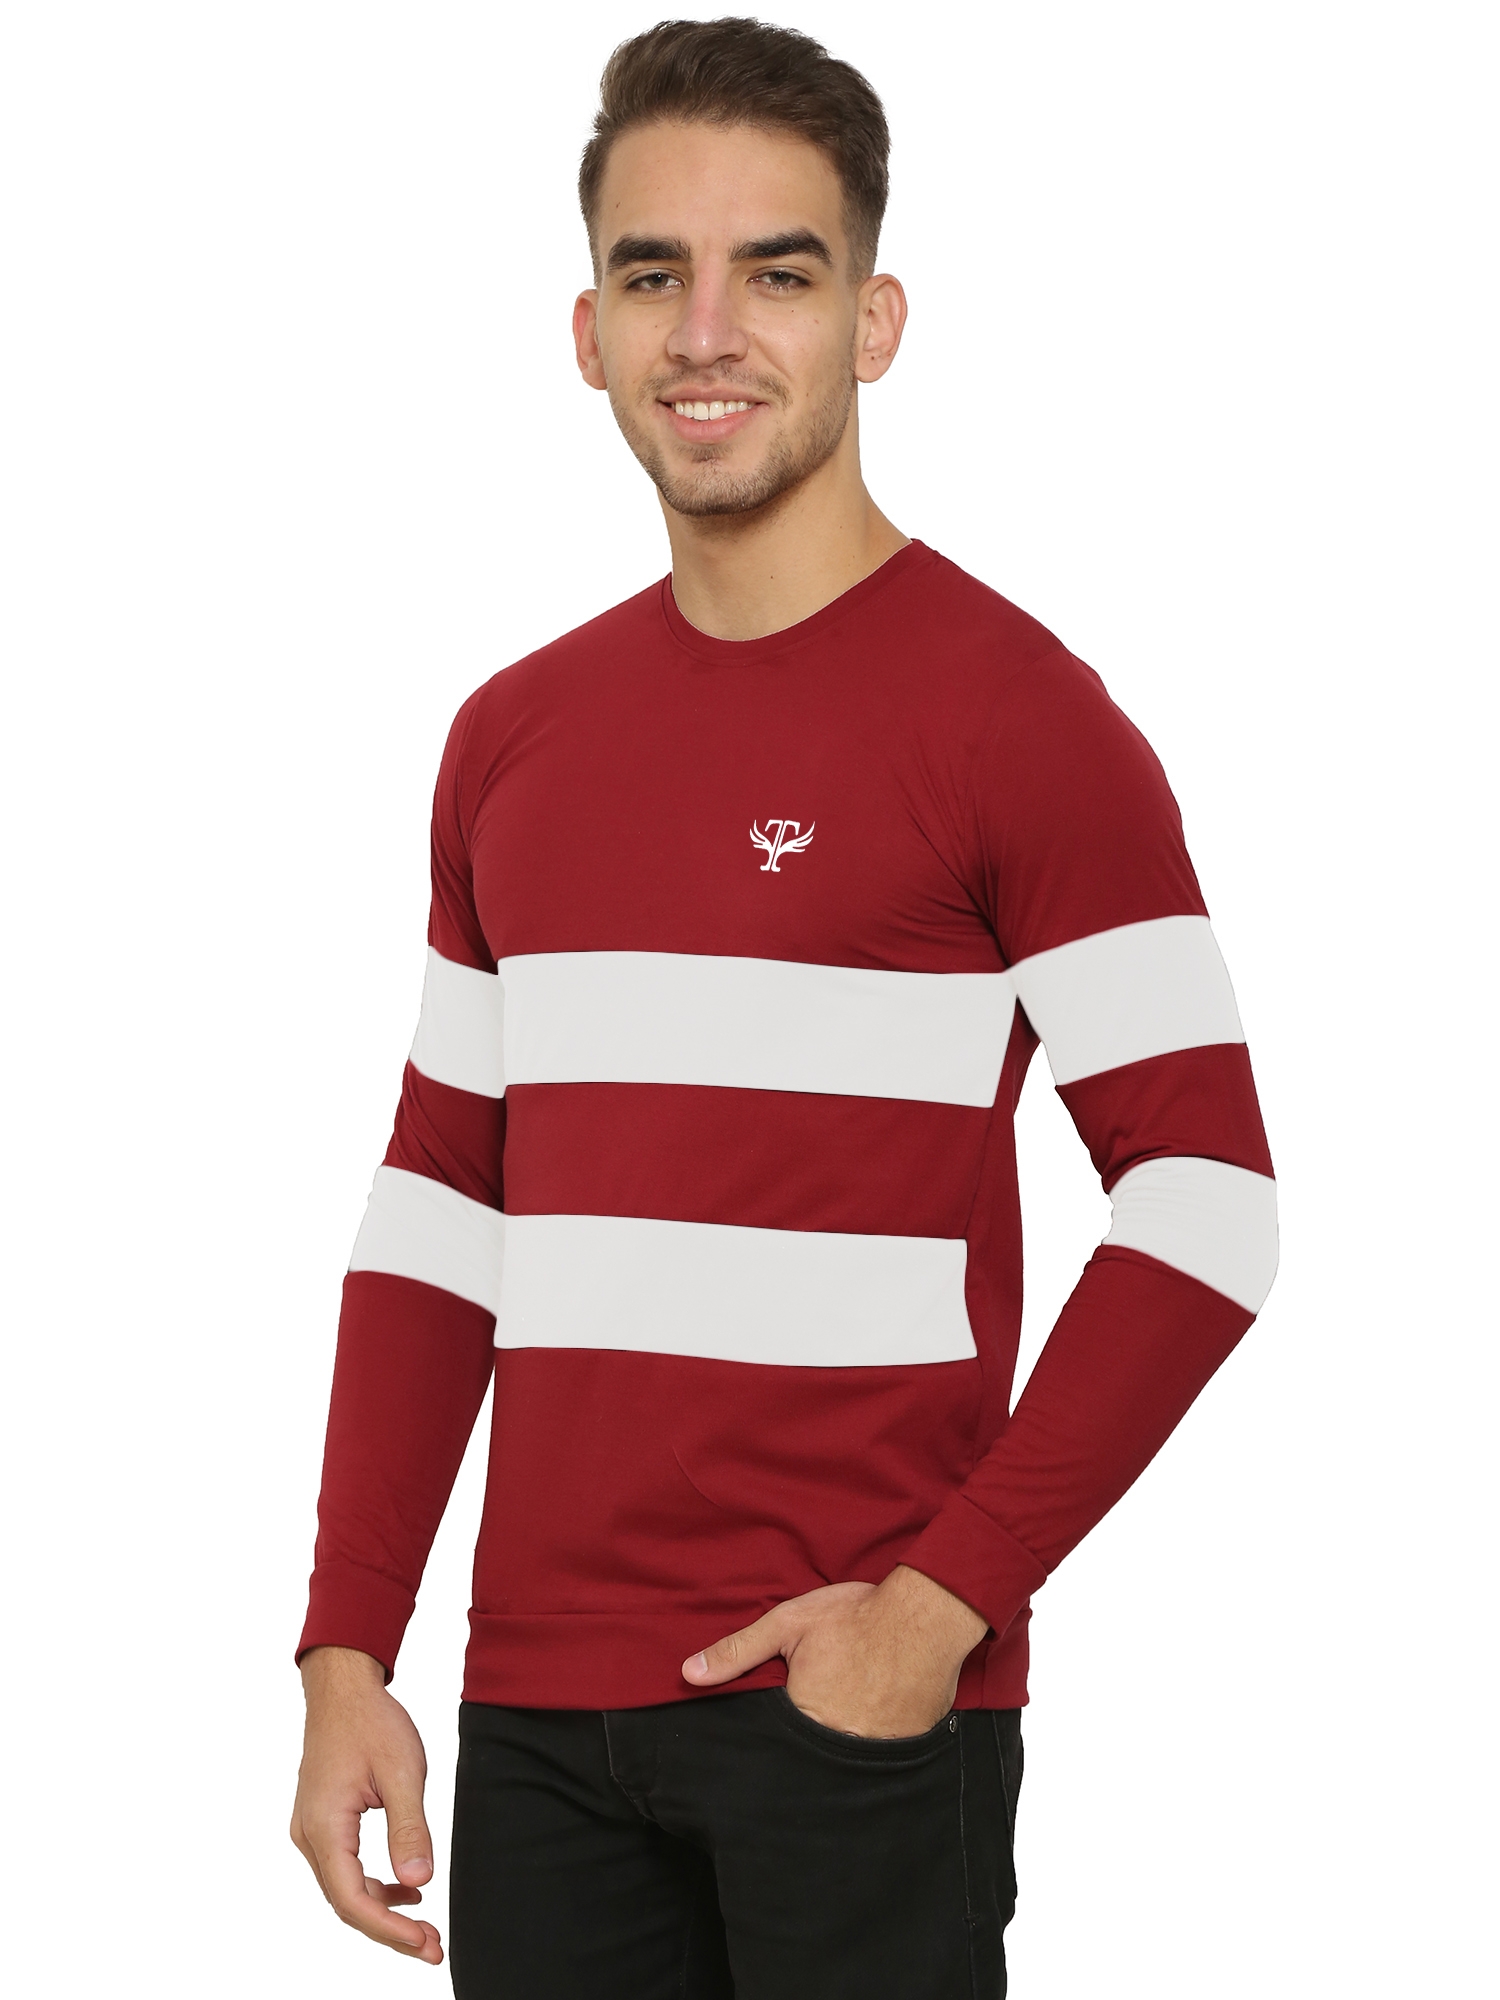 HEATHEX | Men's Chest Panel Regular Full Sleeve Fit Red T-Shirt 2